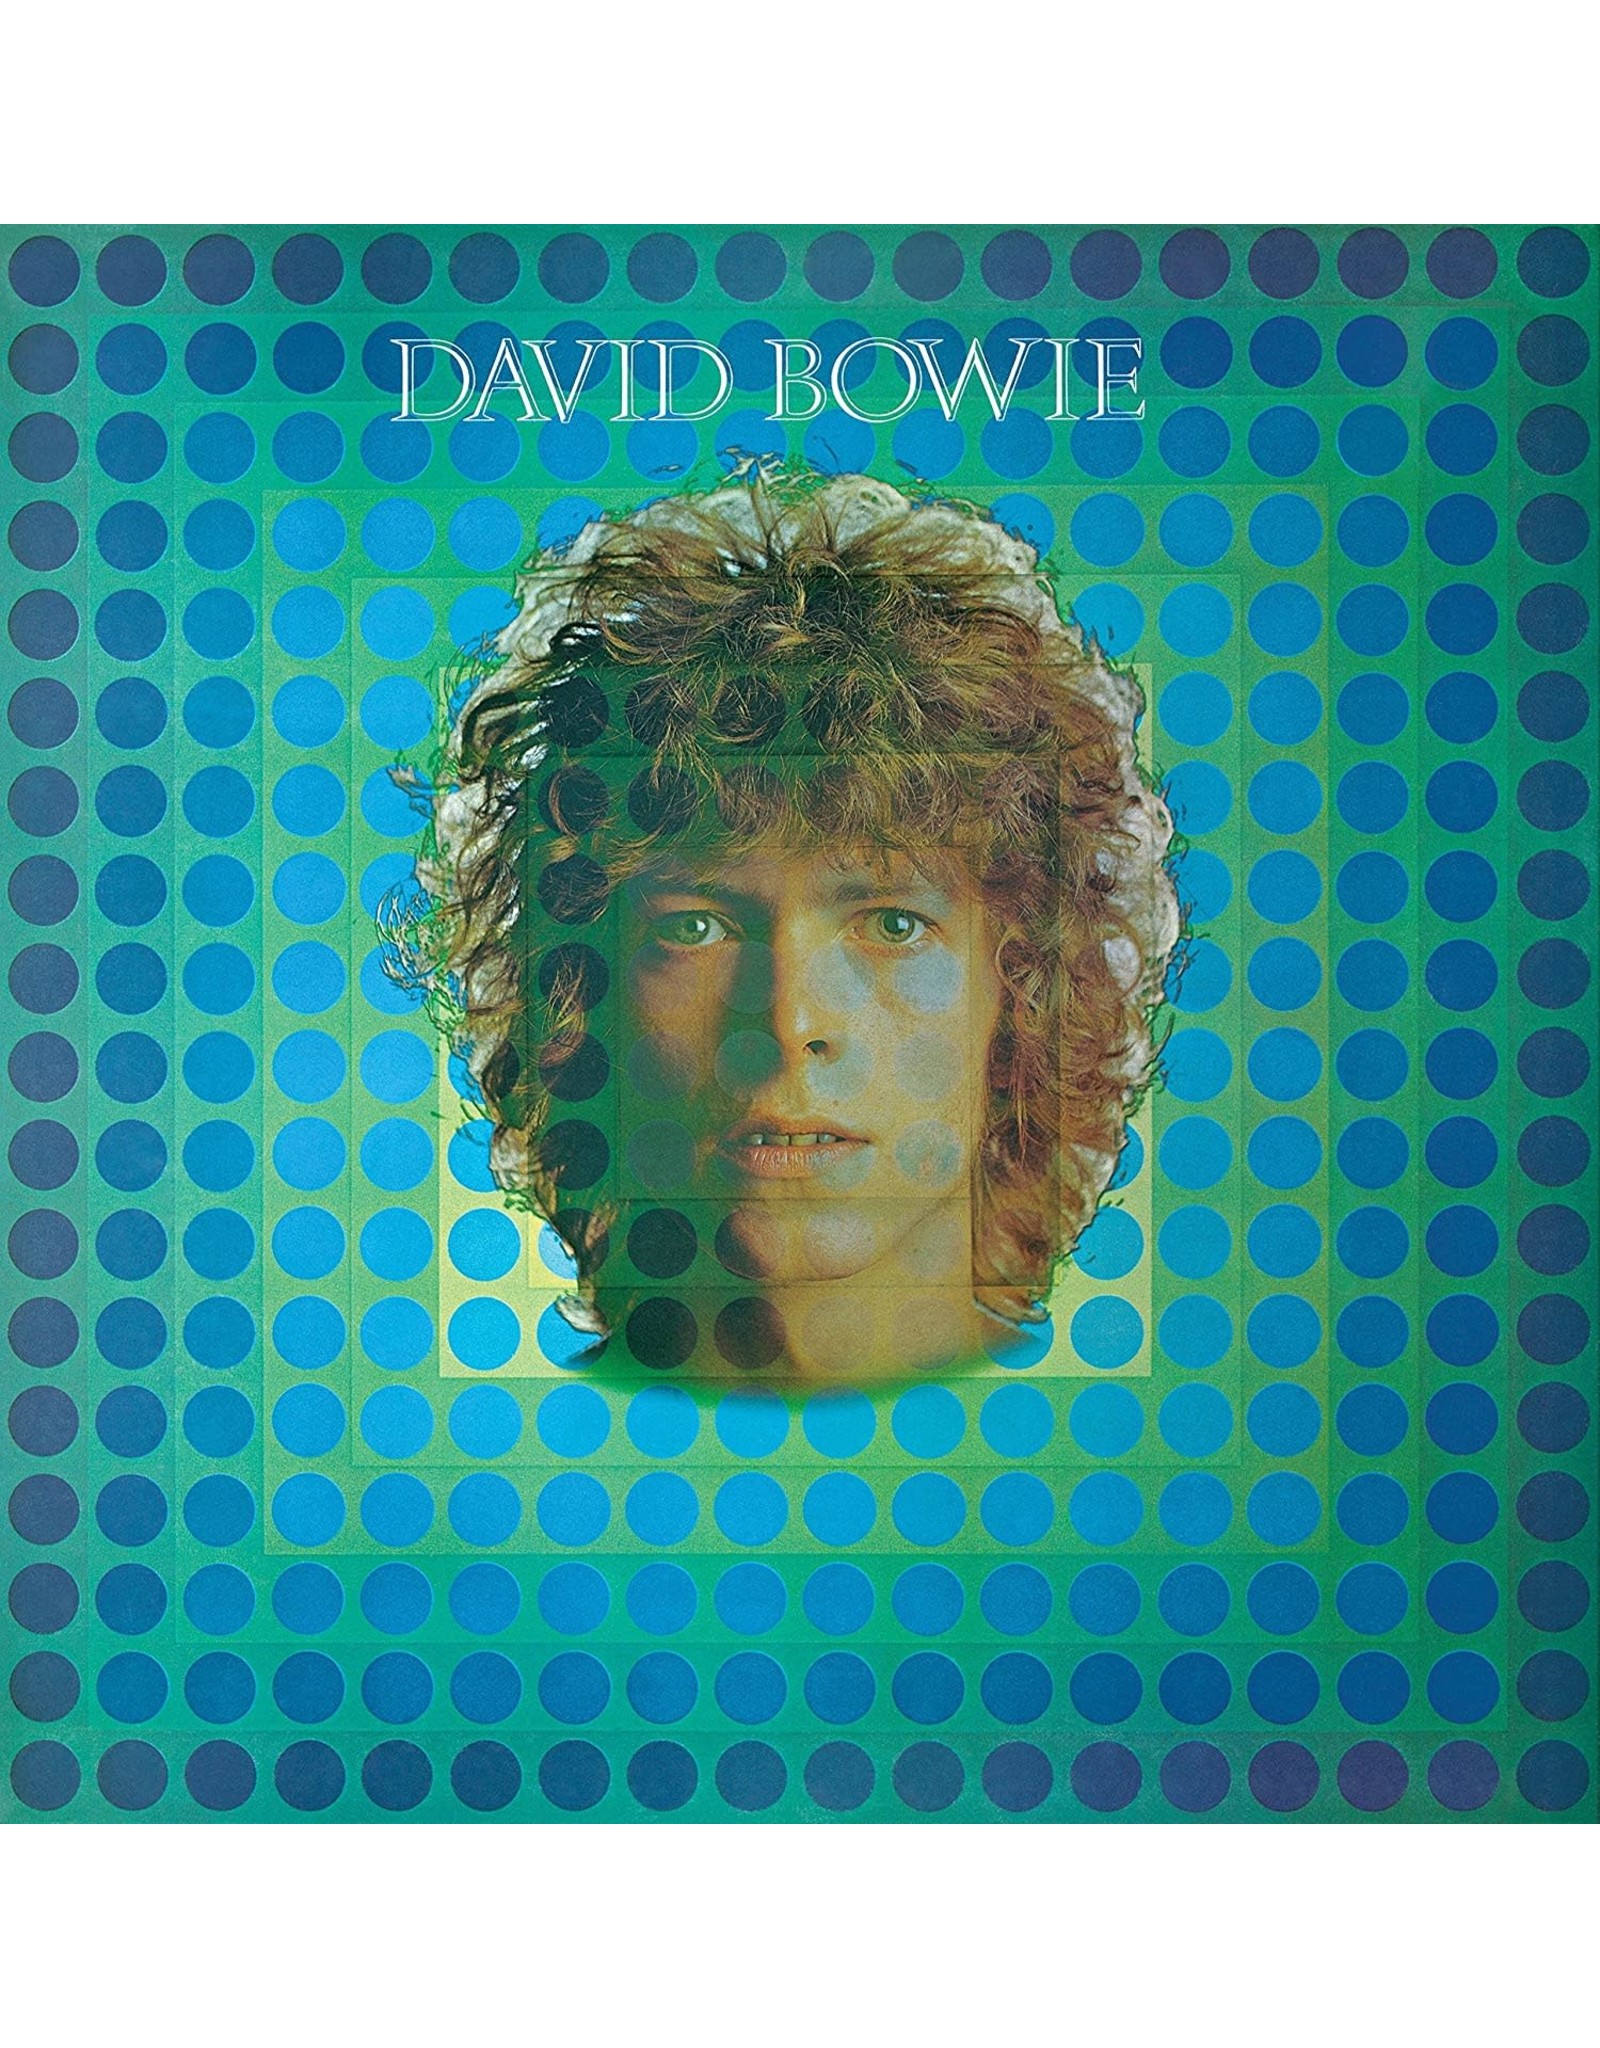 David Bowie - David Bowie (Space Oddity)